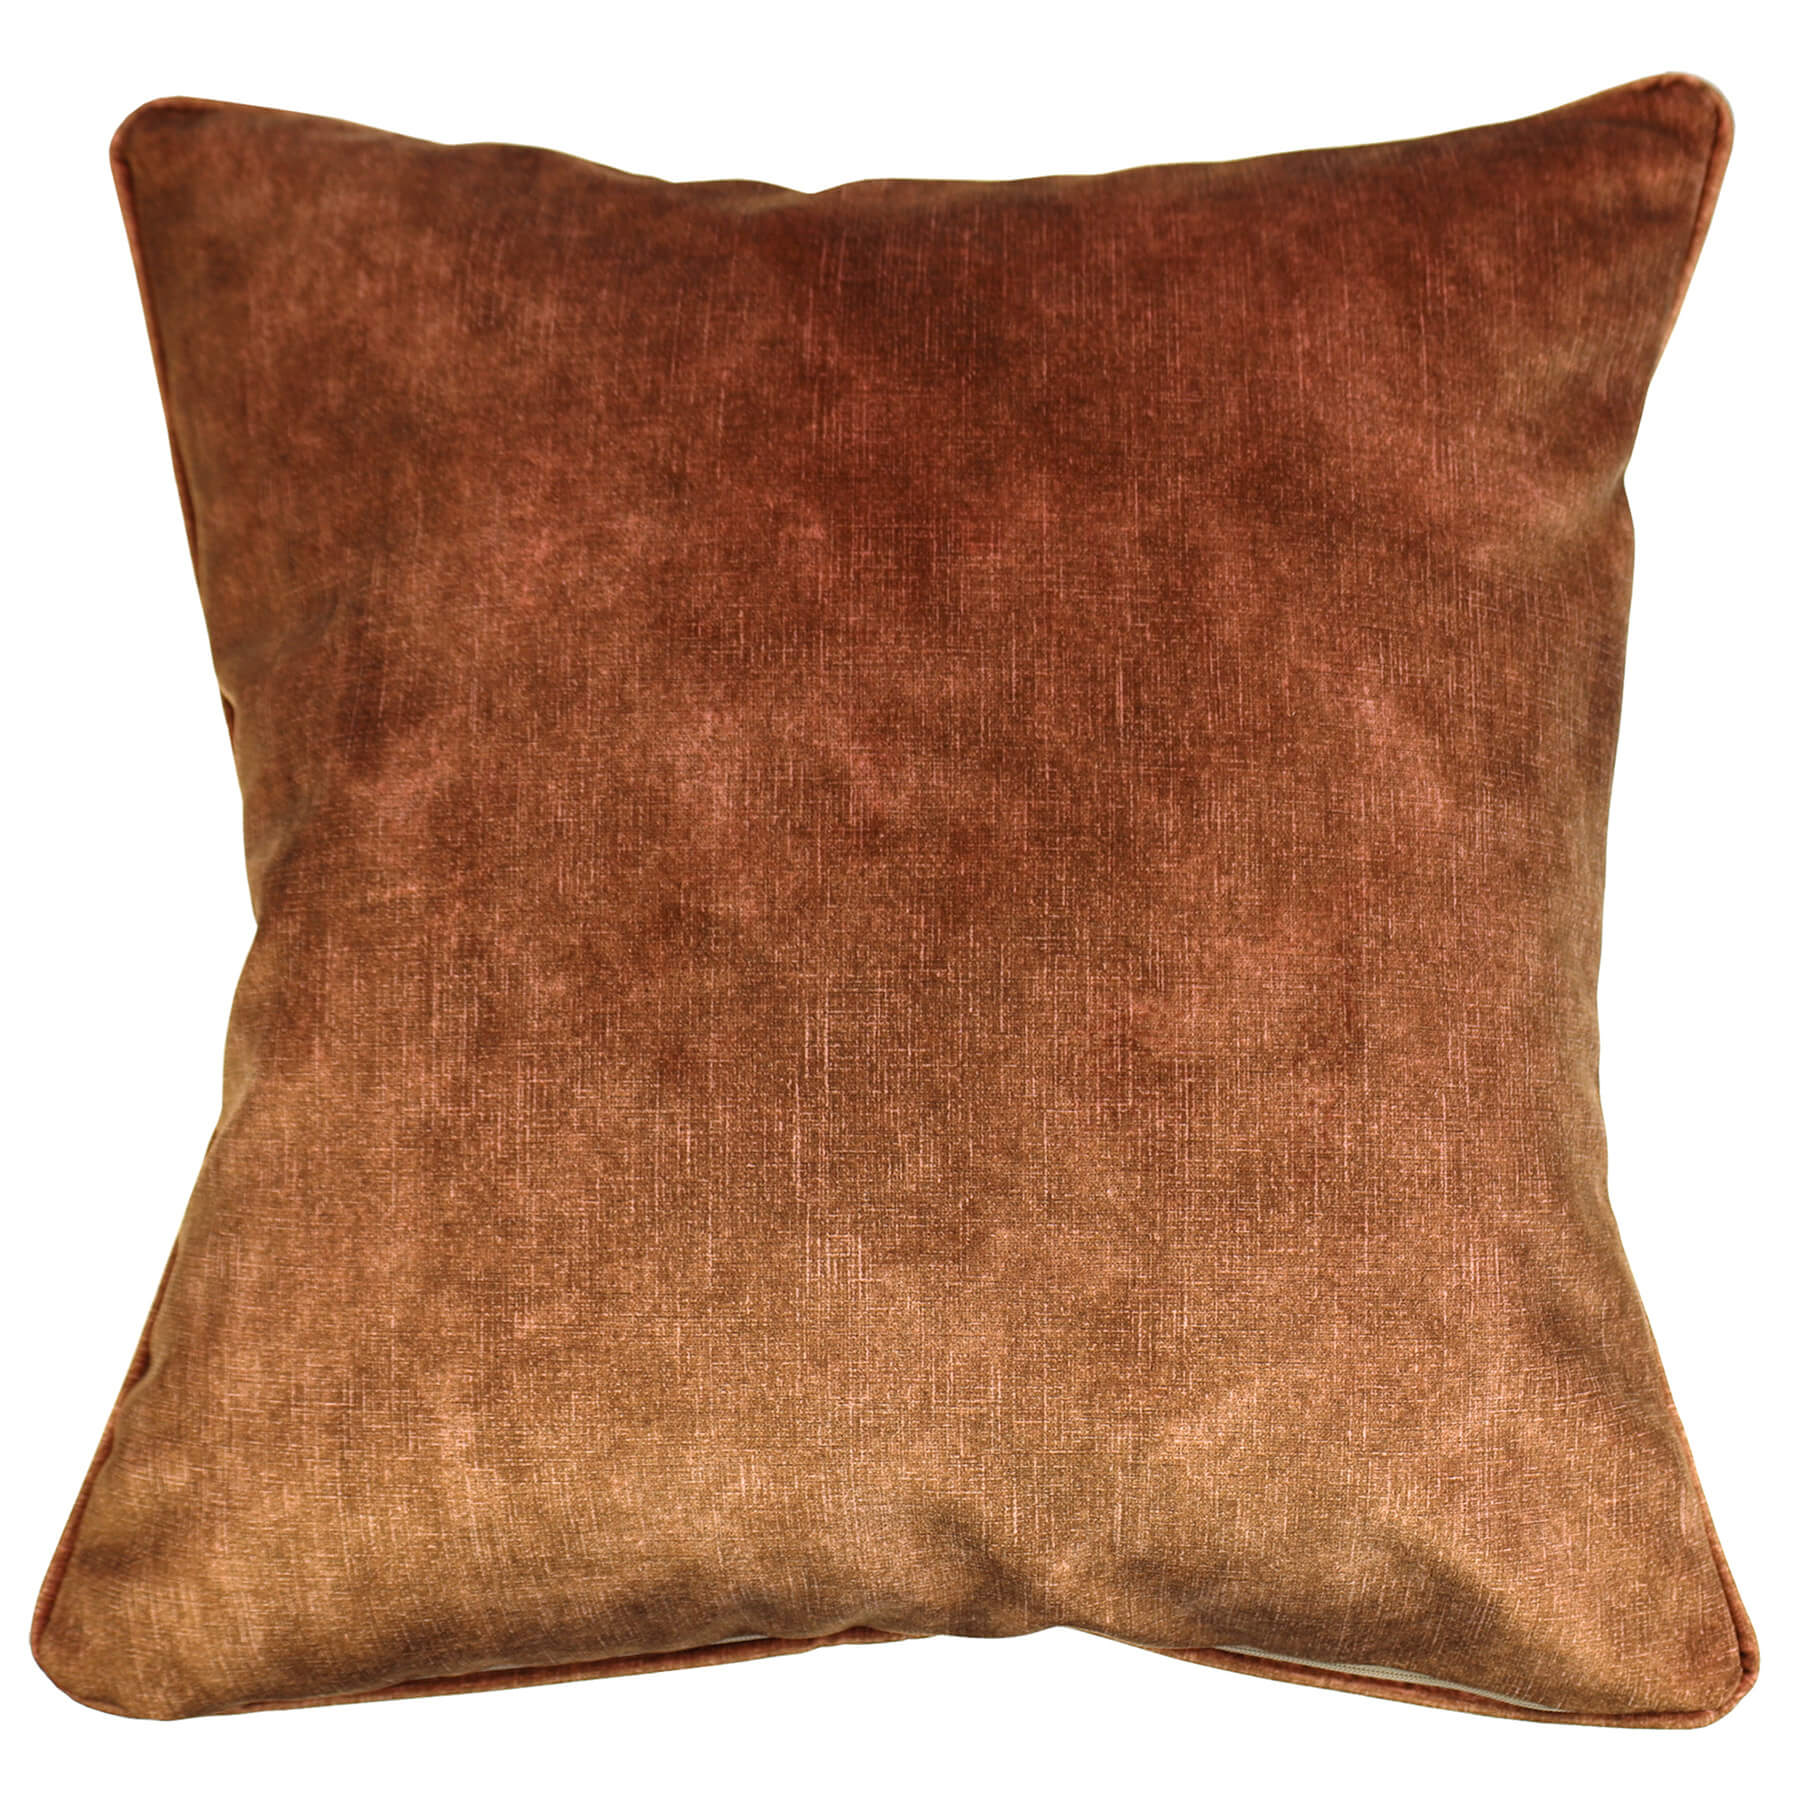 Copper coloured velvet cushion